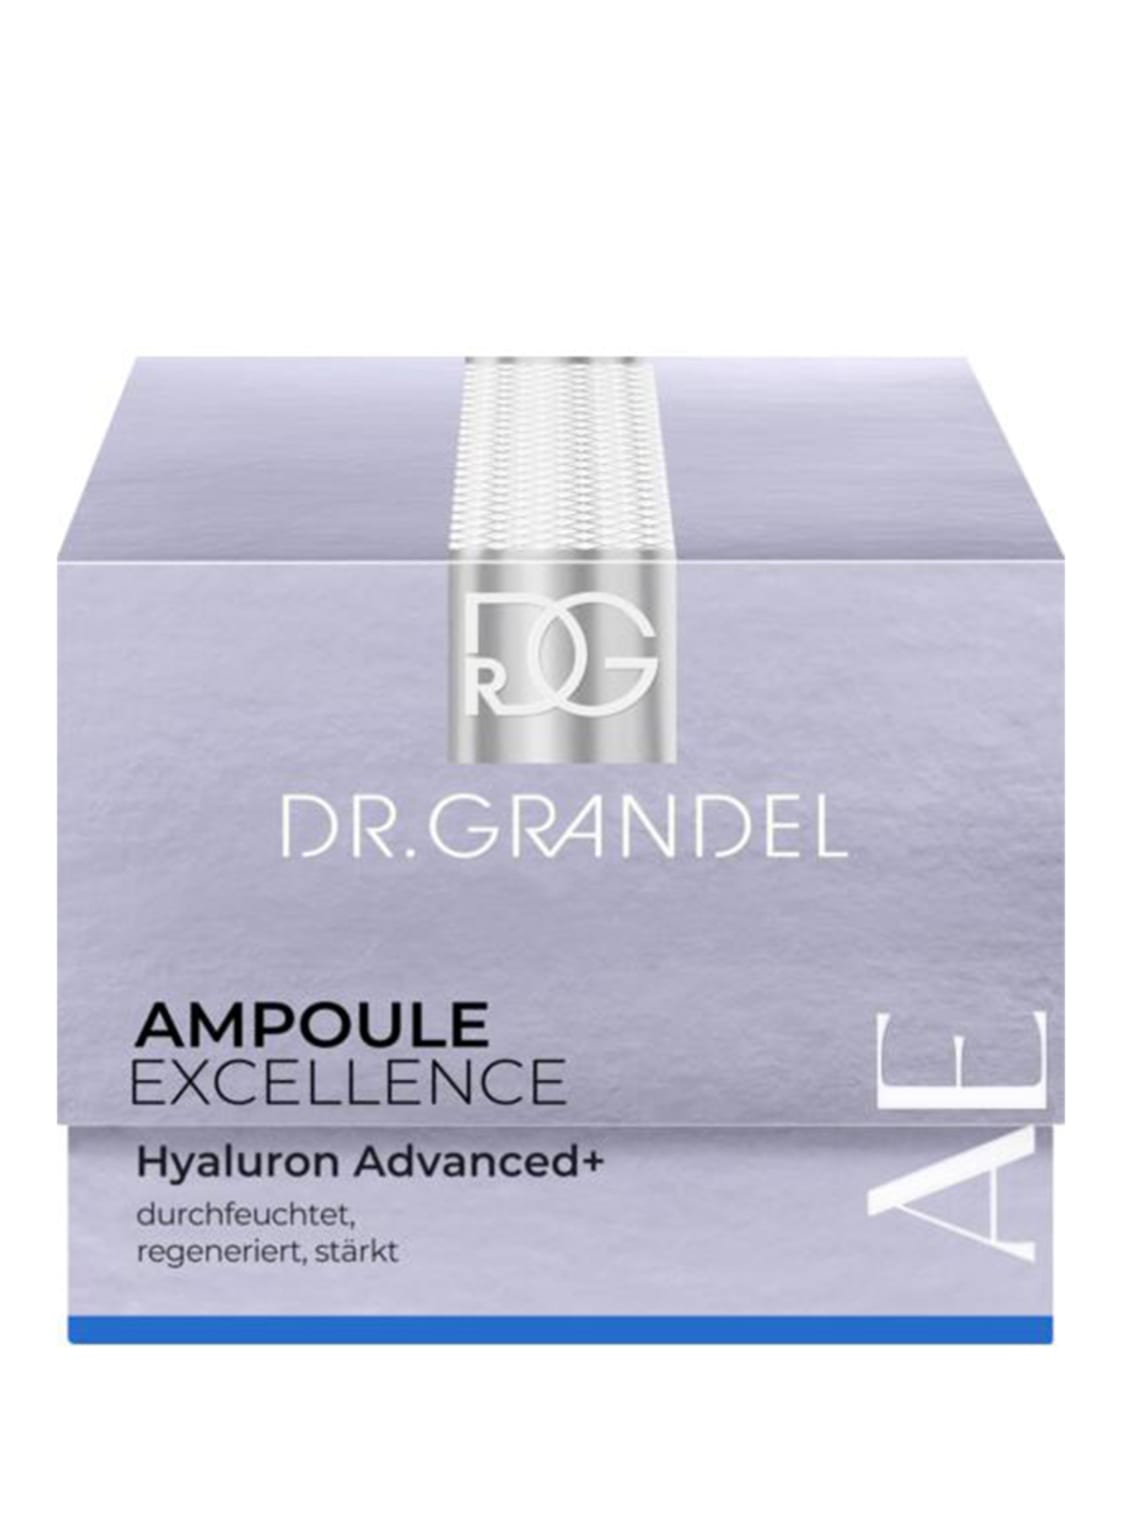 Dr. Grandel Ampoule Excellence Hyaluron Advanced+ Wirkstoffampulle für intensive Feuchtigkeit (5 x 3ml) 15 ml von DR. GRANDEL